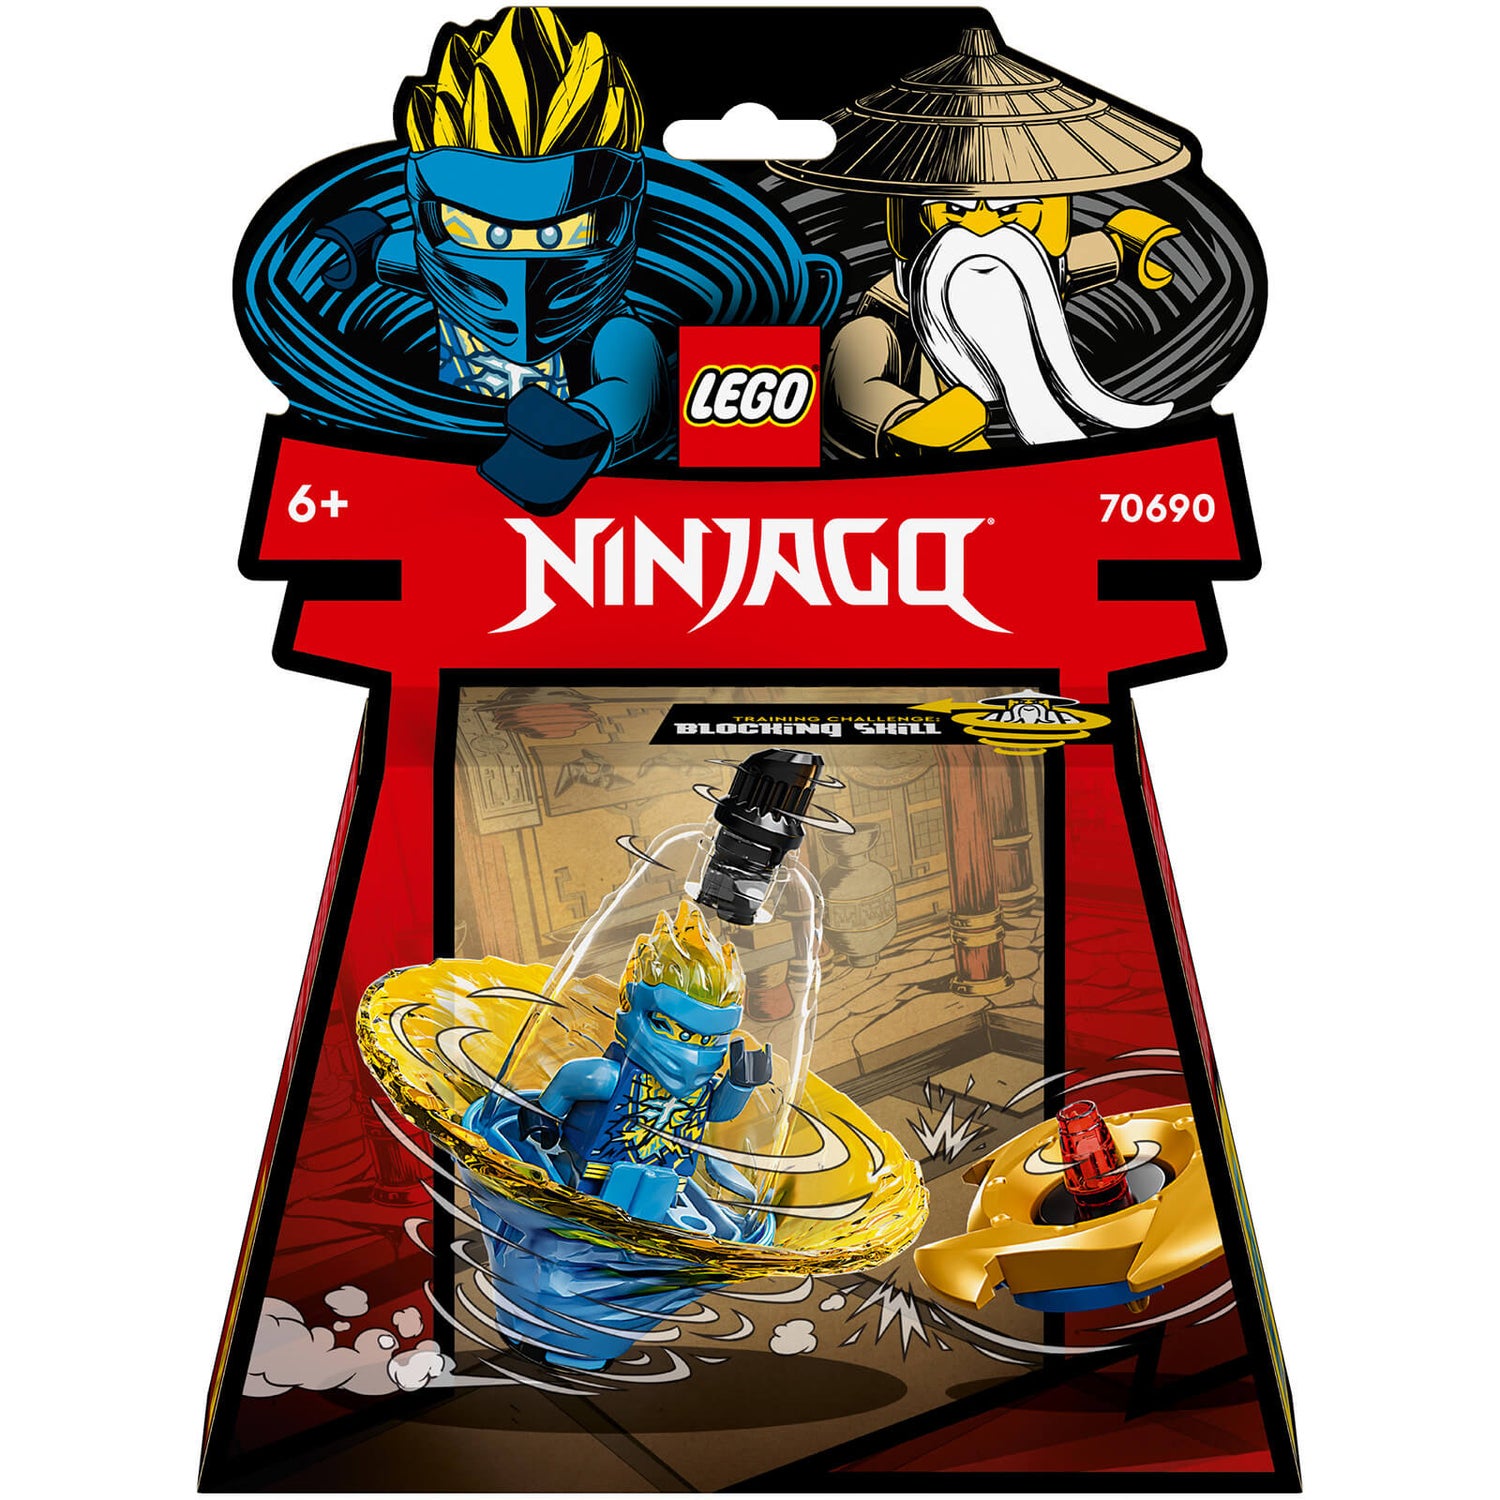 LEGO NINJAGO Jay’s Spinjitzu Ninja Training Spin Toy (70690)